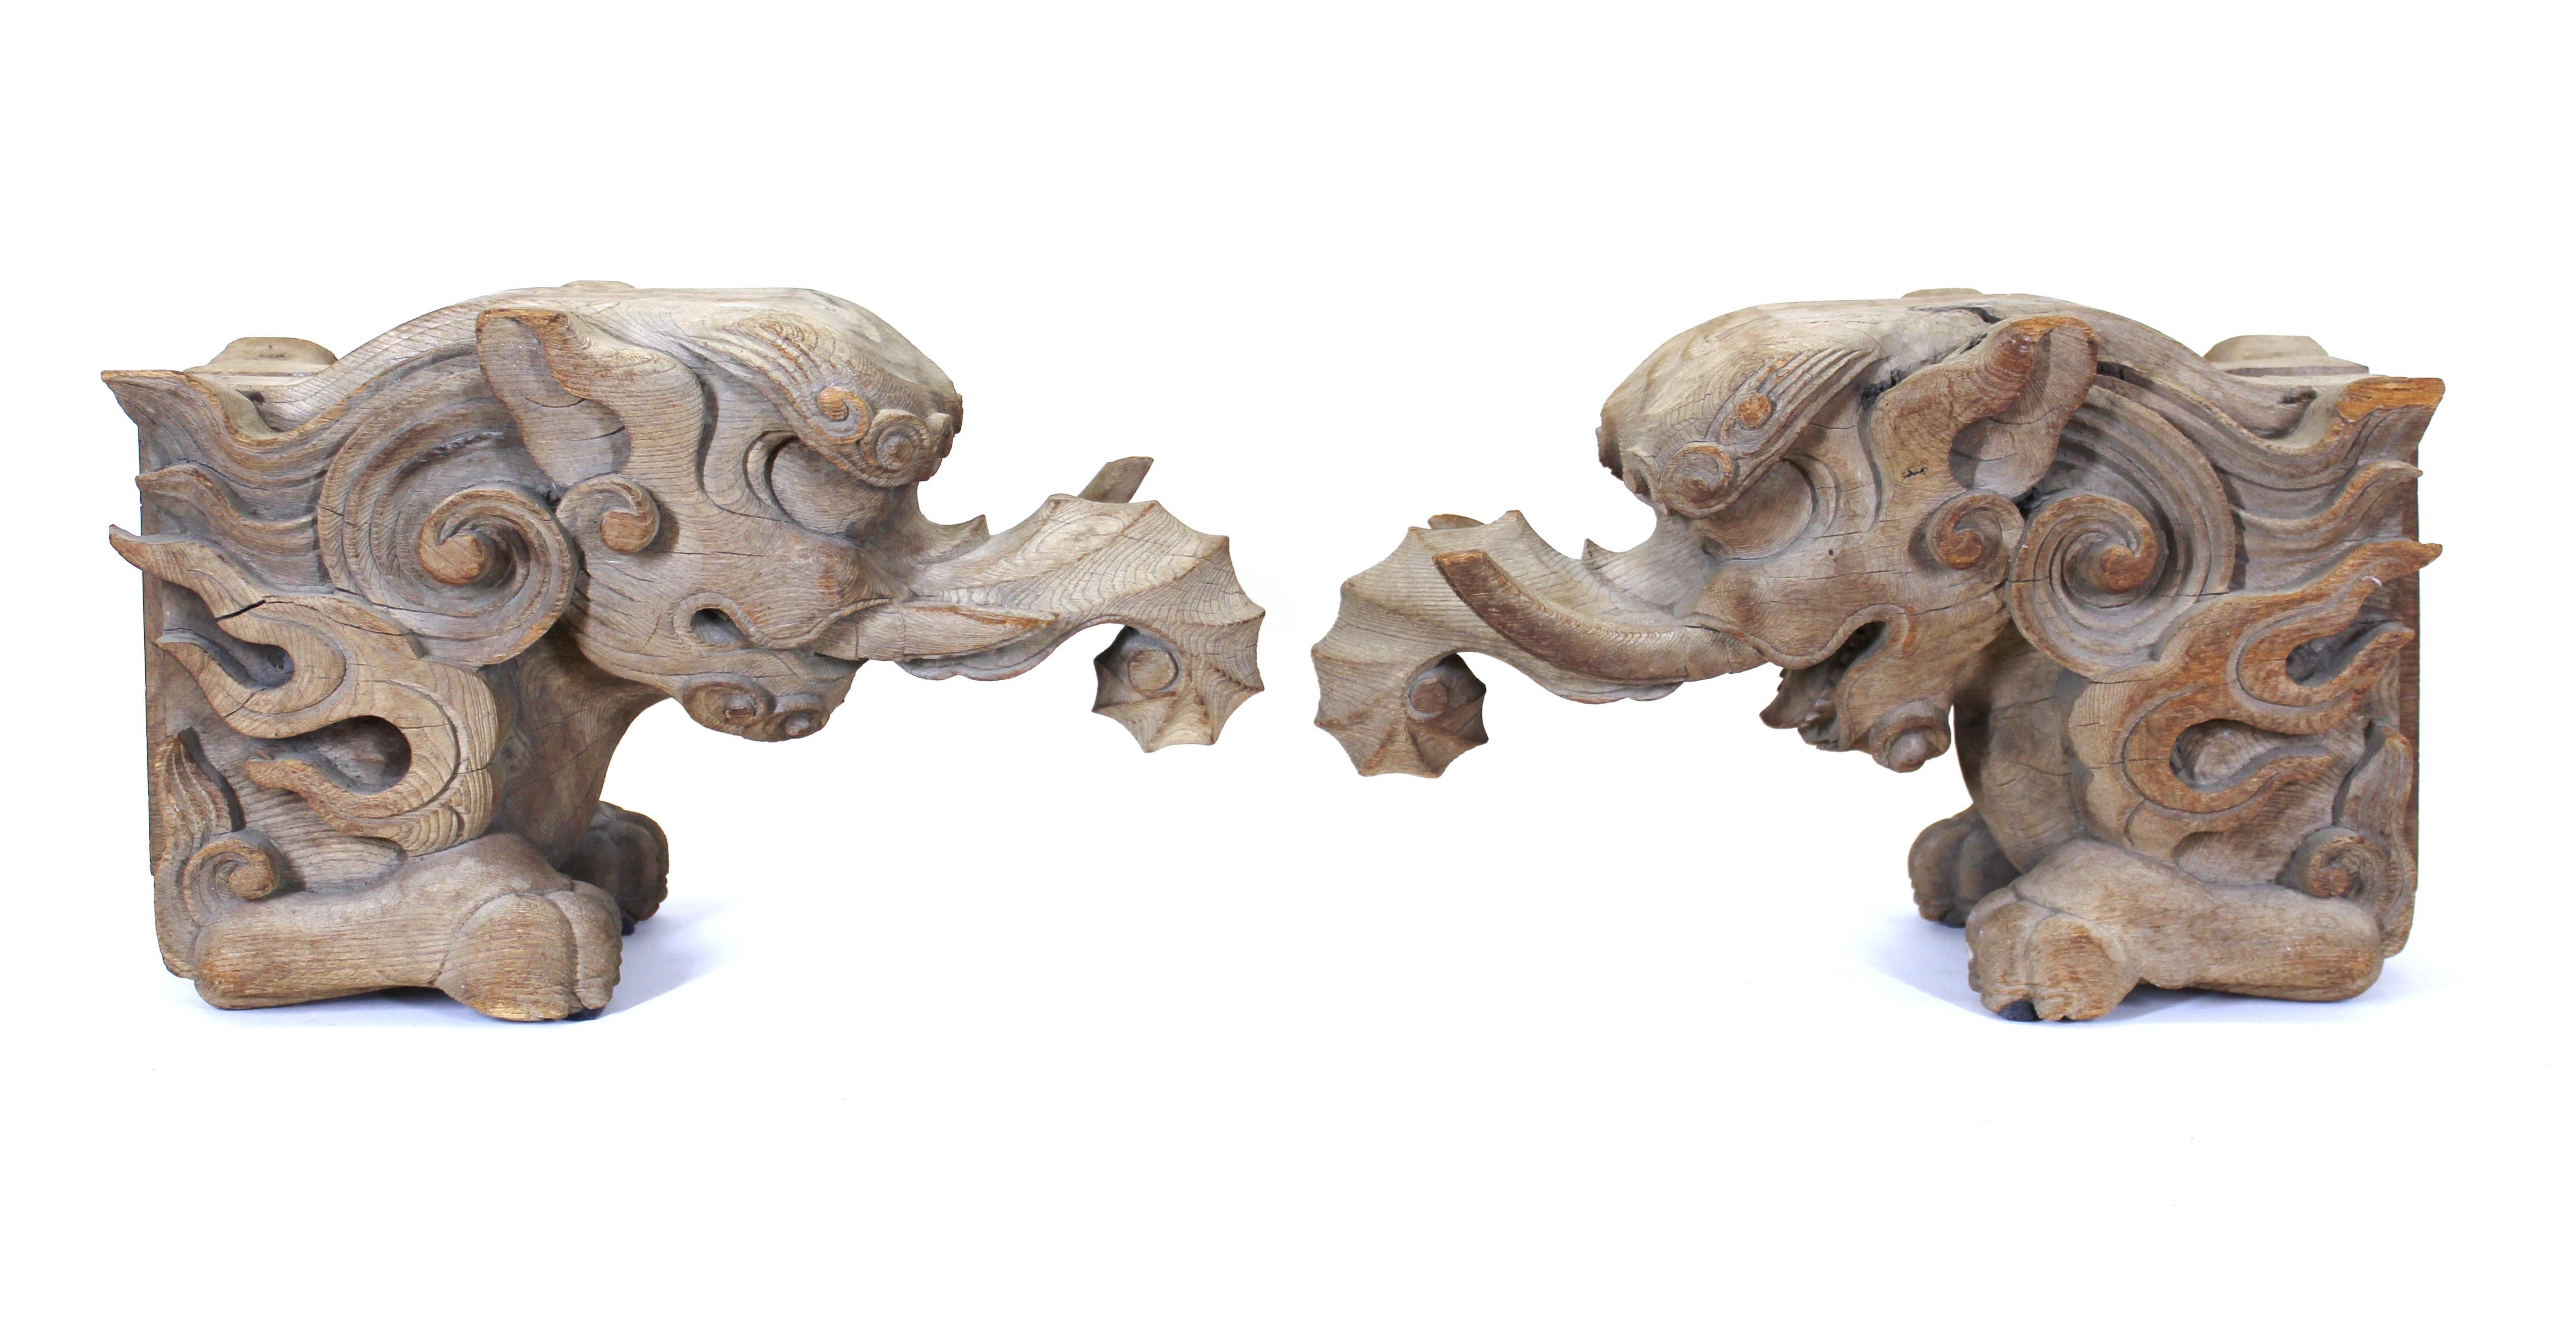 Japanische Momoyama-Periode, seltenes frühes Paar von Baku-Figuren, geschnitzt in Keyaki-Holz mit einer exquisiten Holzmaserung, 17. Jahrhundert, um 1650.
Der elefantenähnliche Baku ist ein imaginäres und zusammengesetztes Wesen aus der